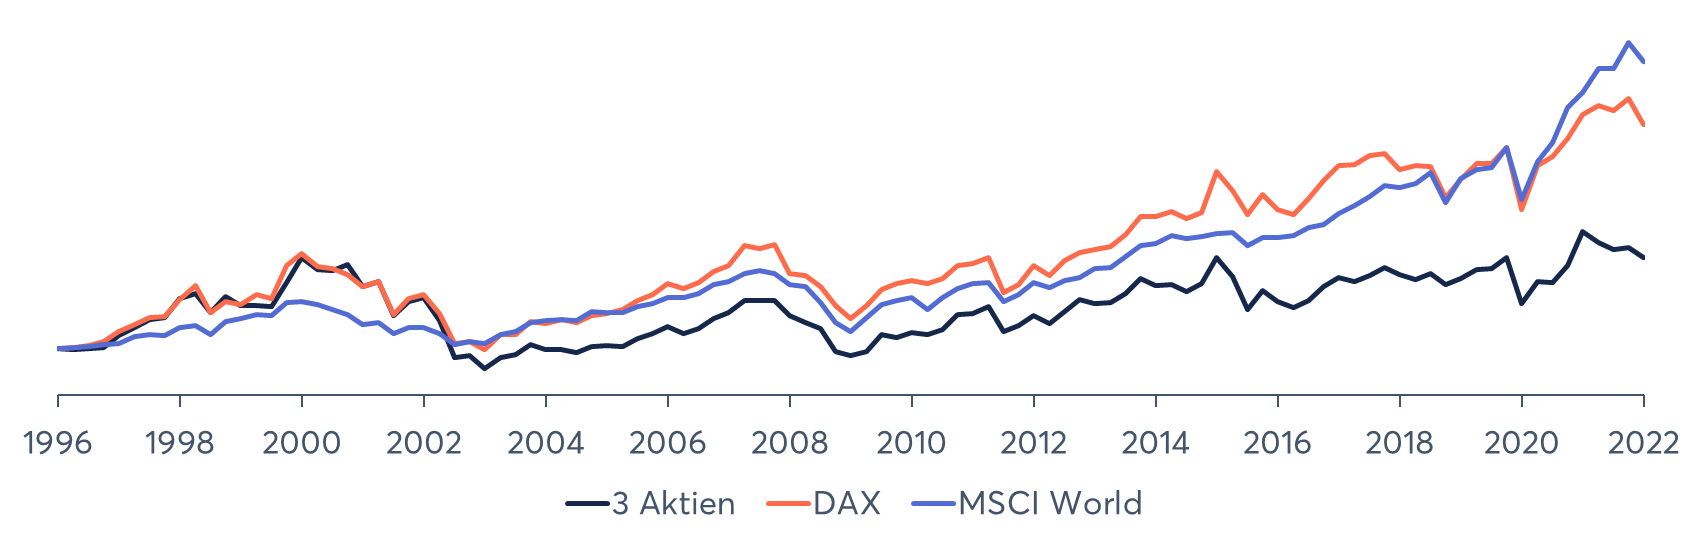 Kursverlauf MSCI World und DAX vs. Einzelaktien